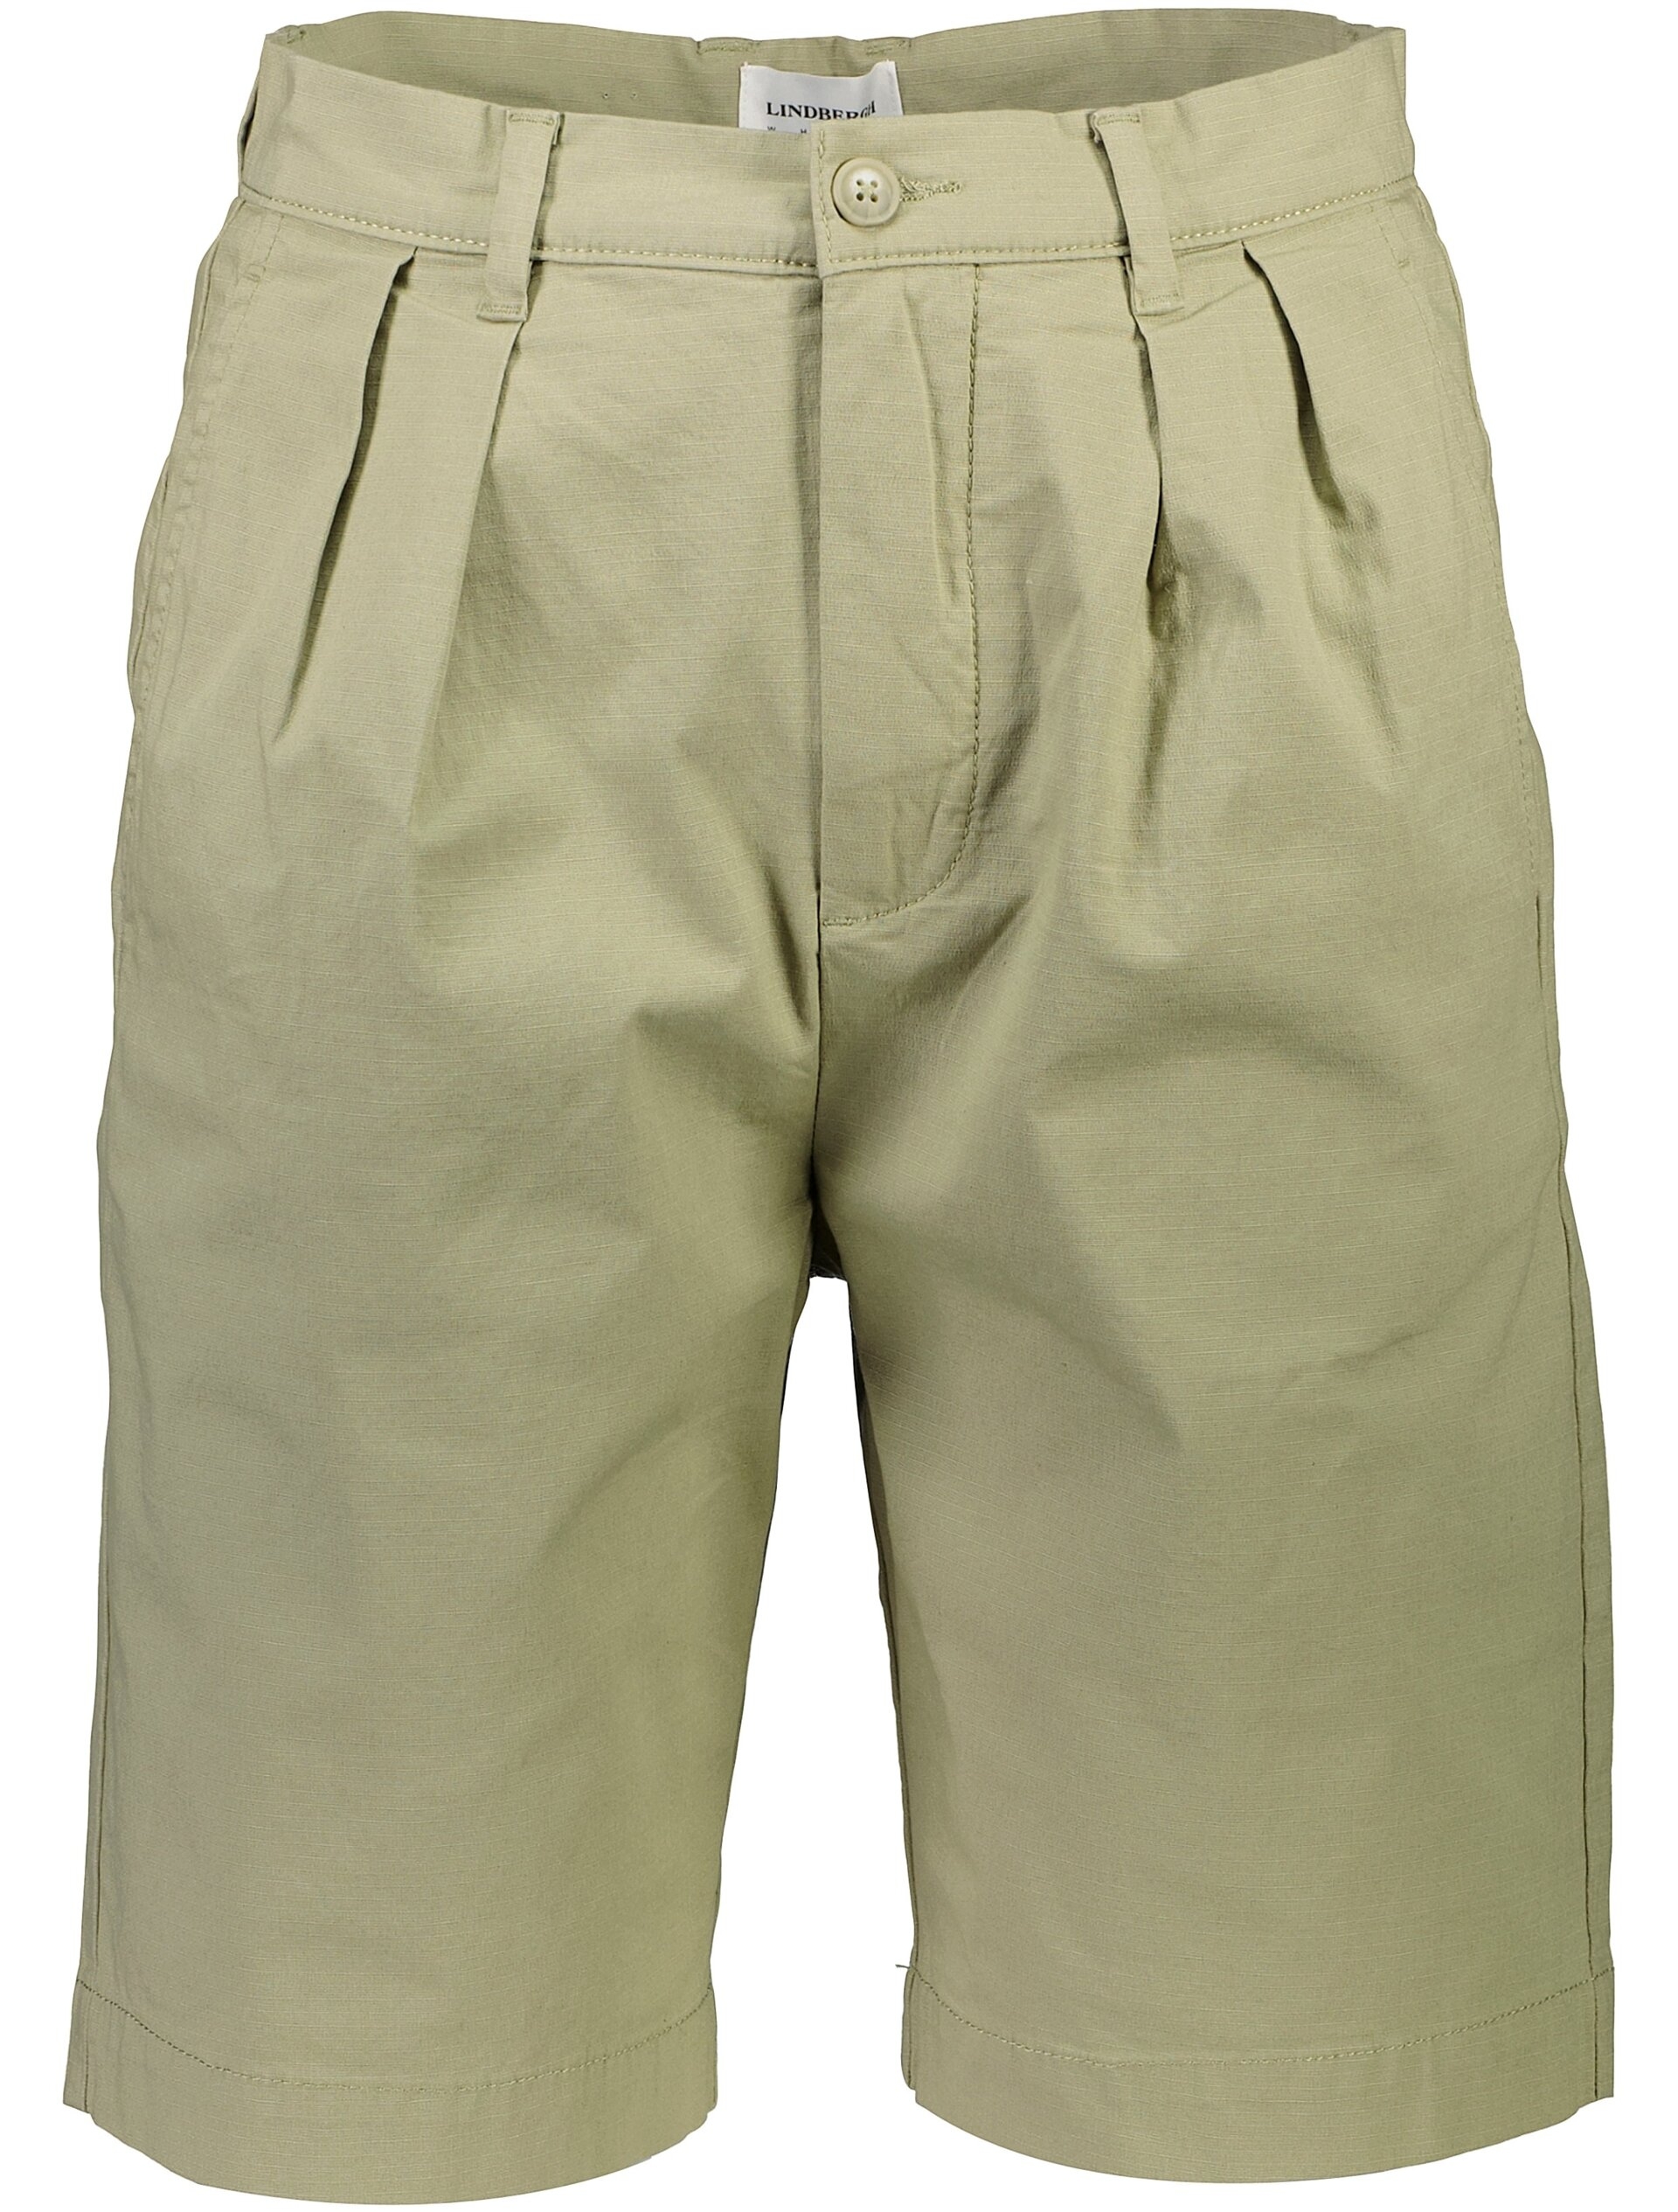 Lindbergh Casual shorts grön / lt army